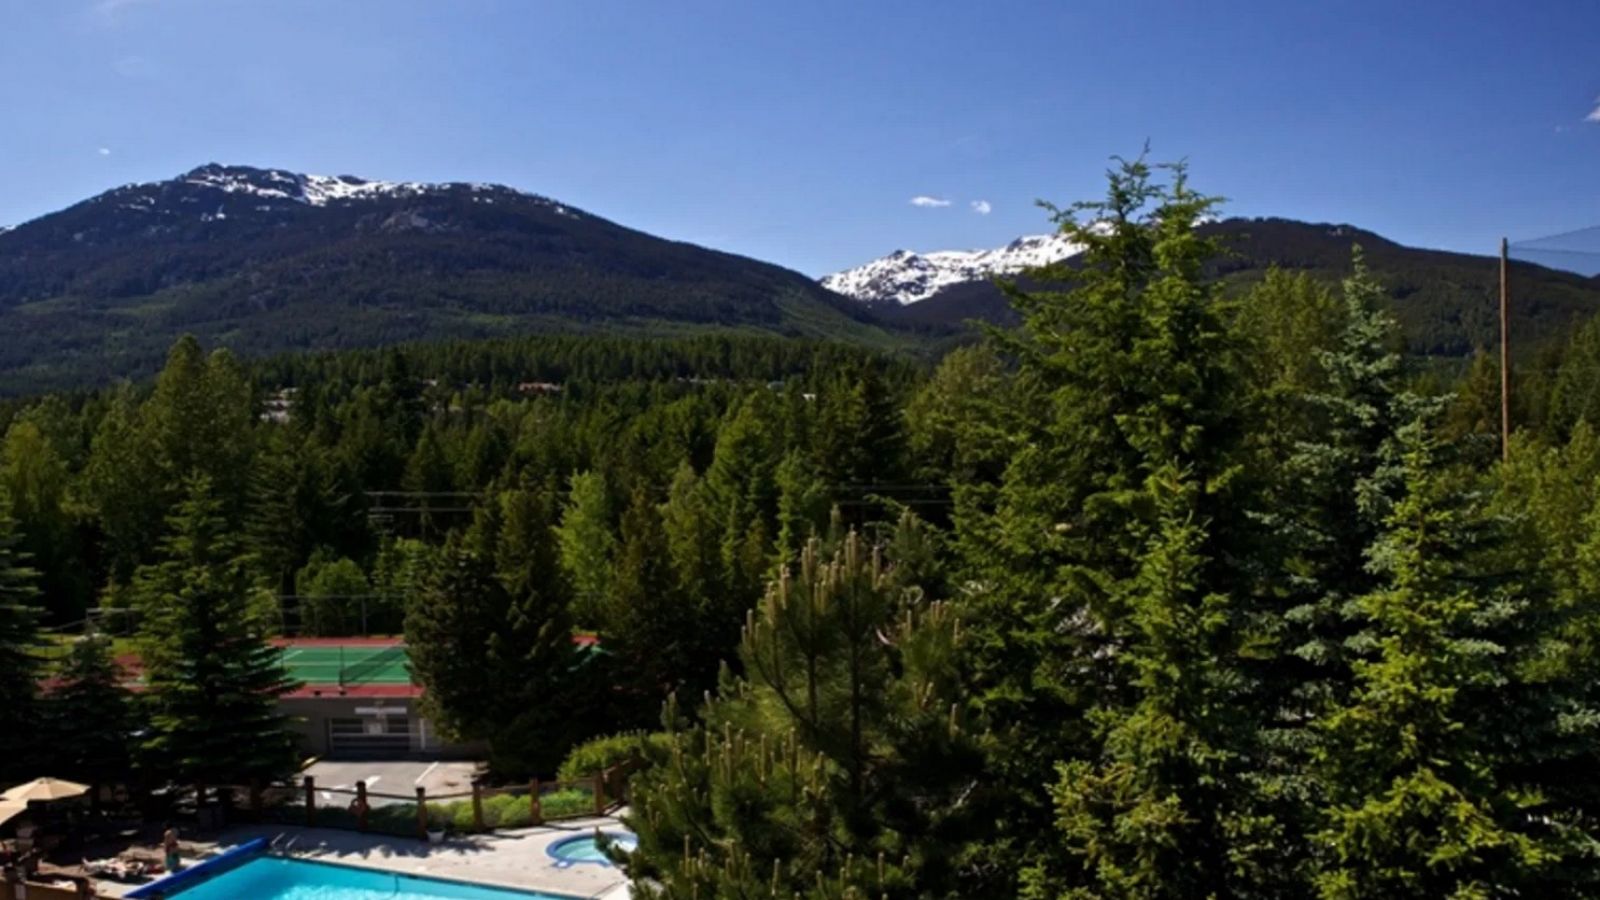 Tantalus Resort Lodge - views